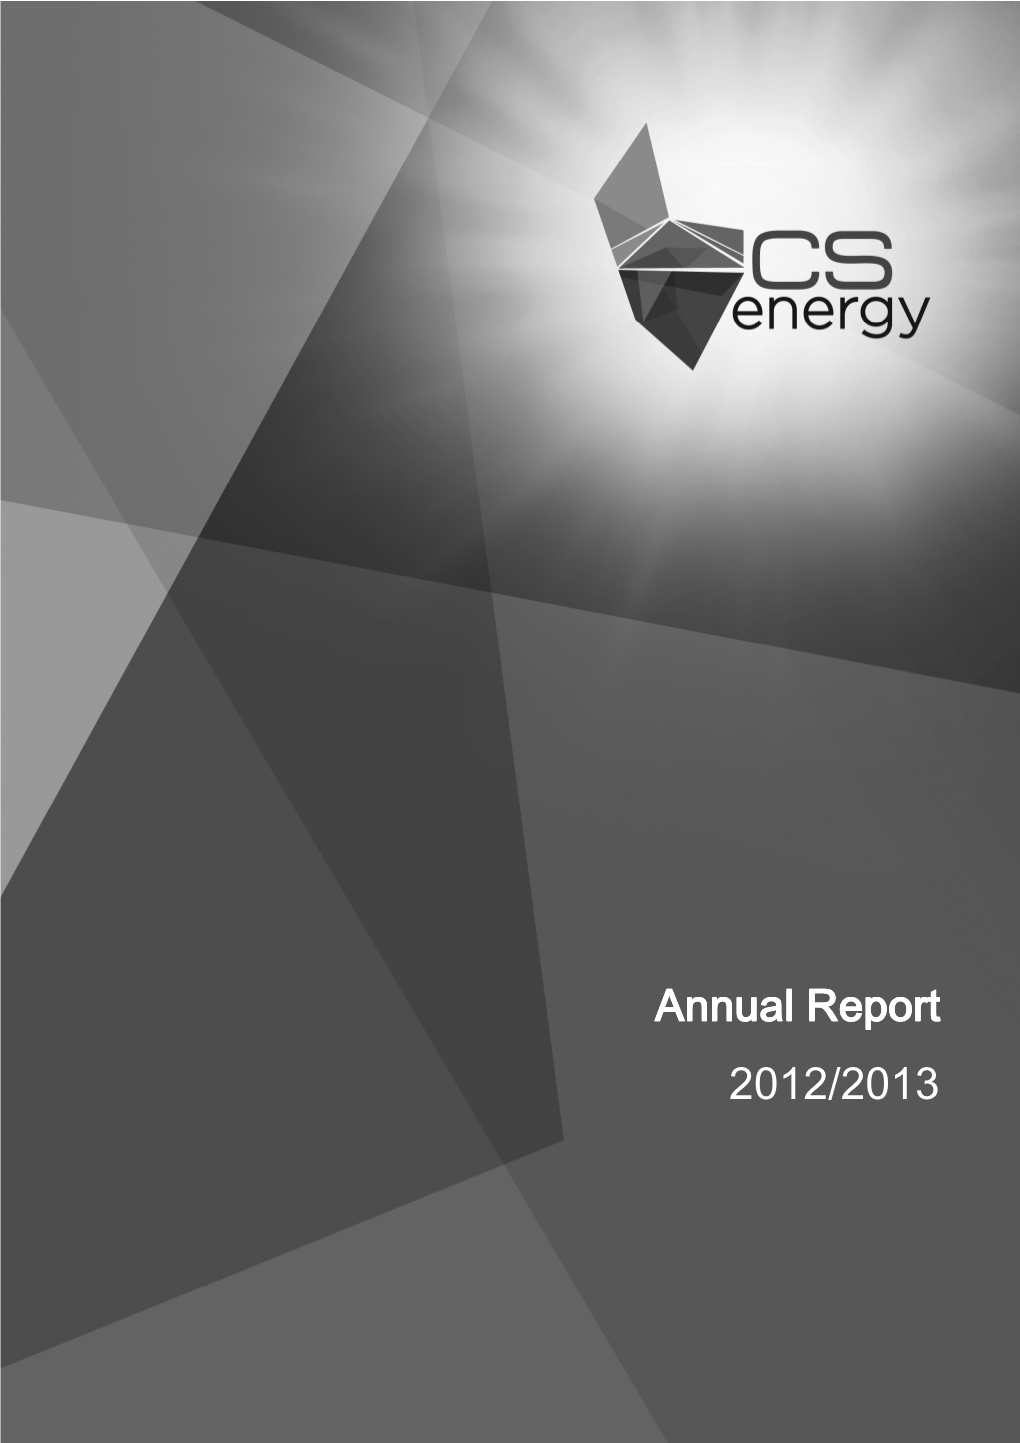 Annual Report Annual Report 2012/2013